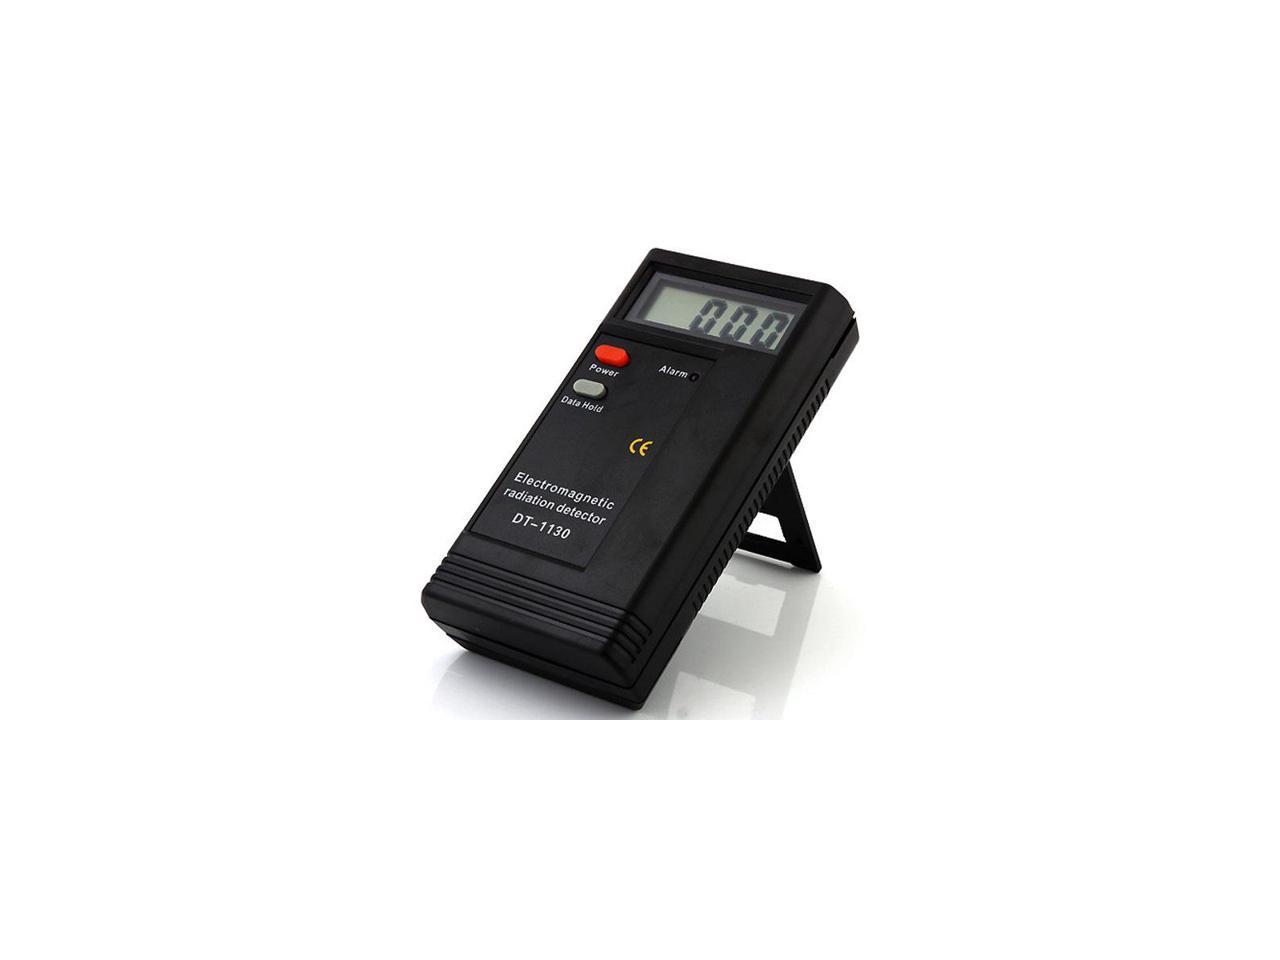 GXT Electromagnetic Radiation Detector EMF Meter Dosimeter Tester DT-1130 Instrument 